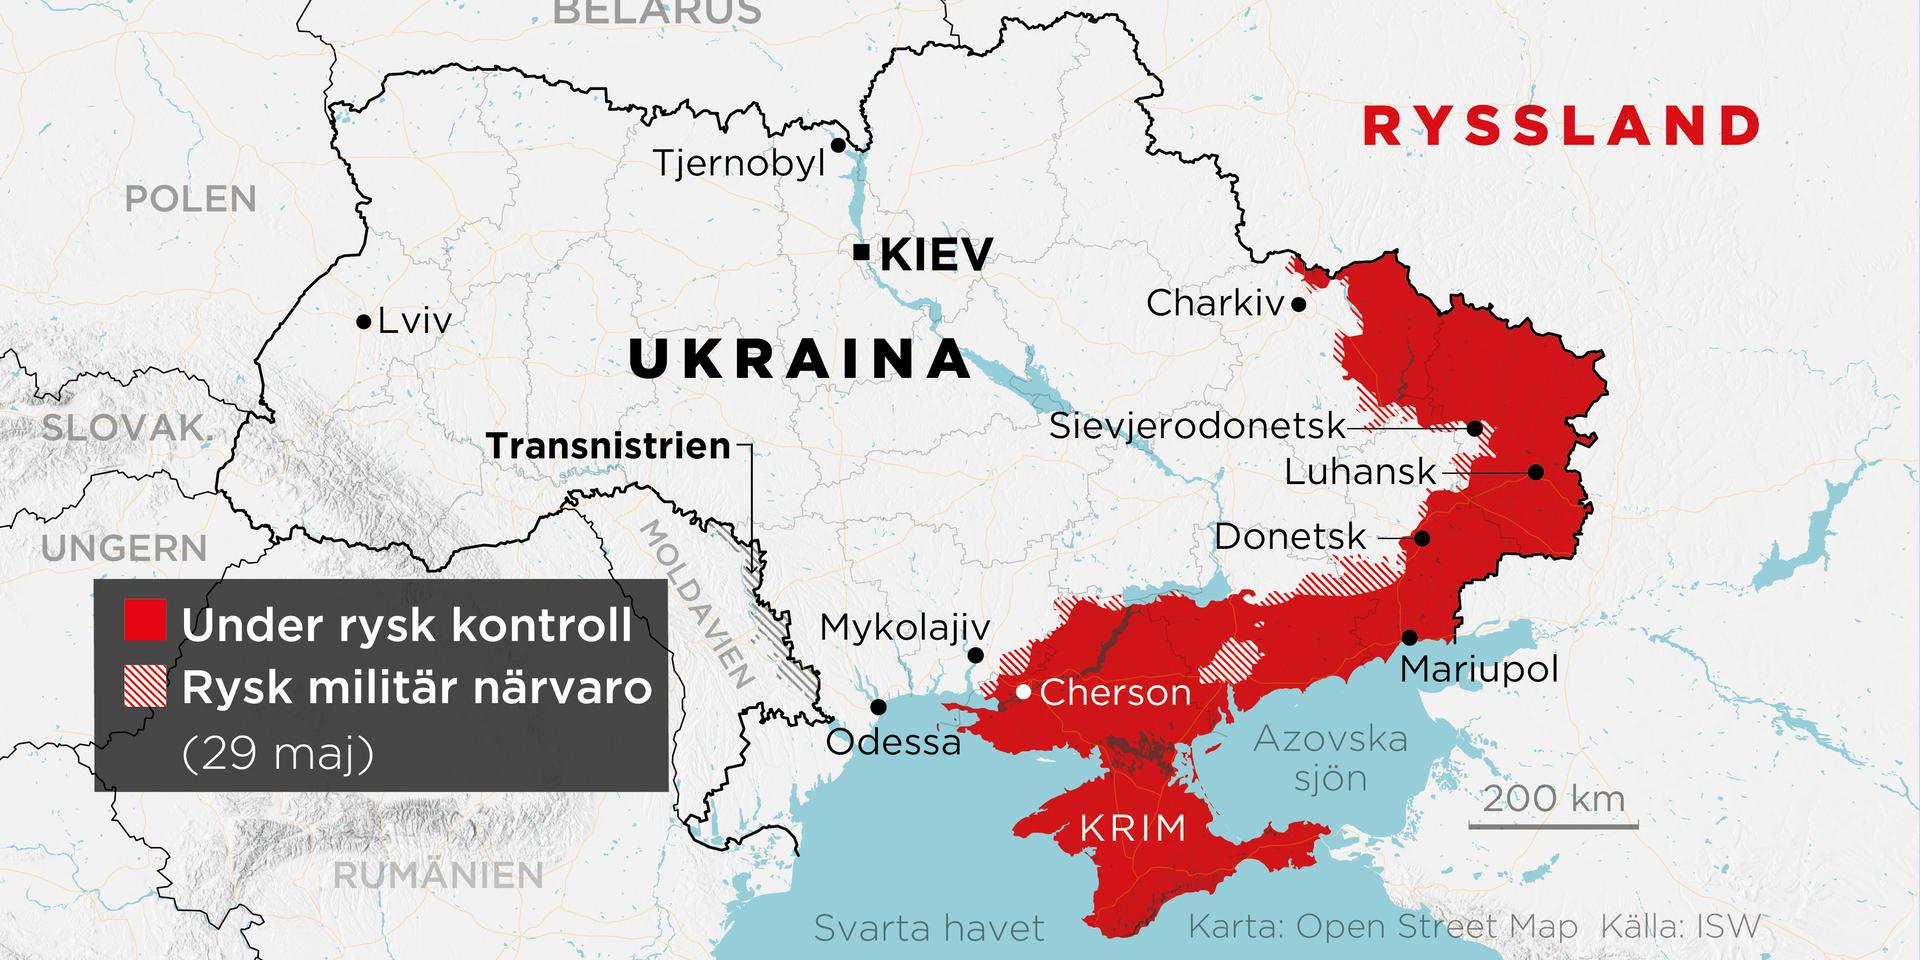 Områden under rysk kontroll samt områden med rysk militär närvaro den 29 maj.